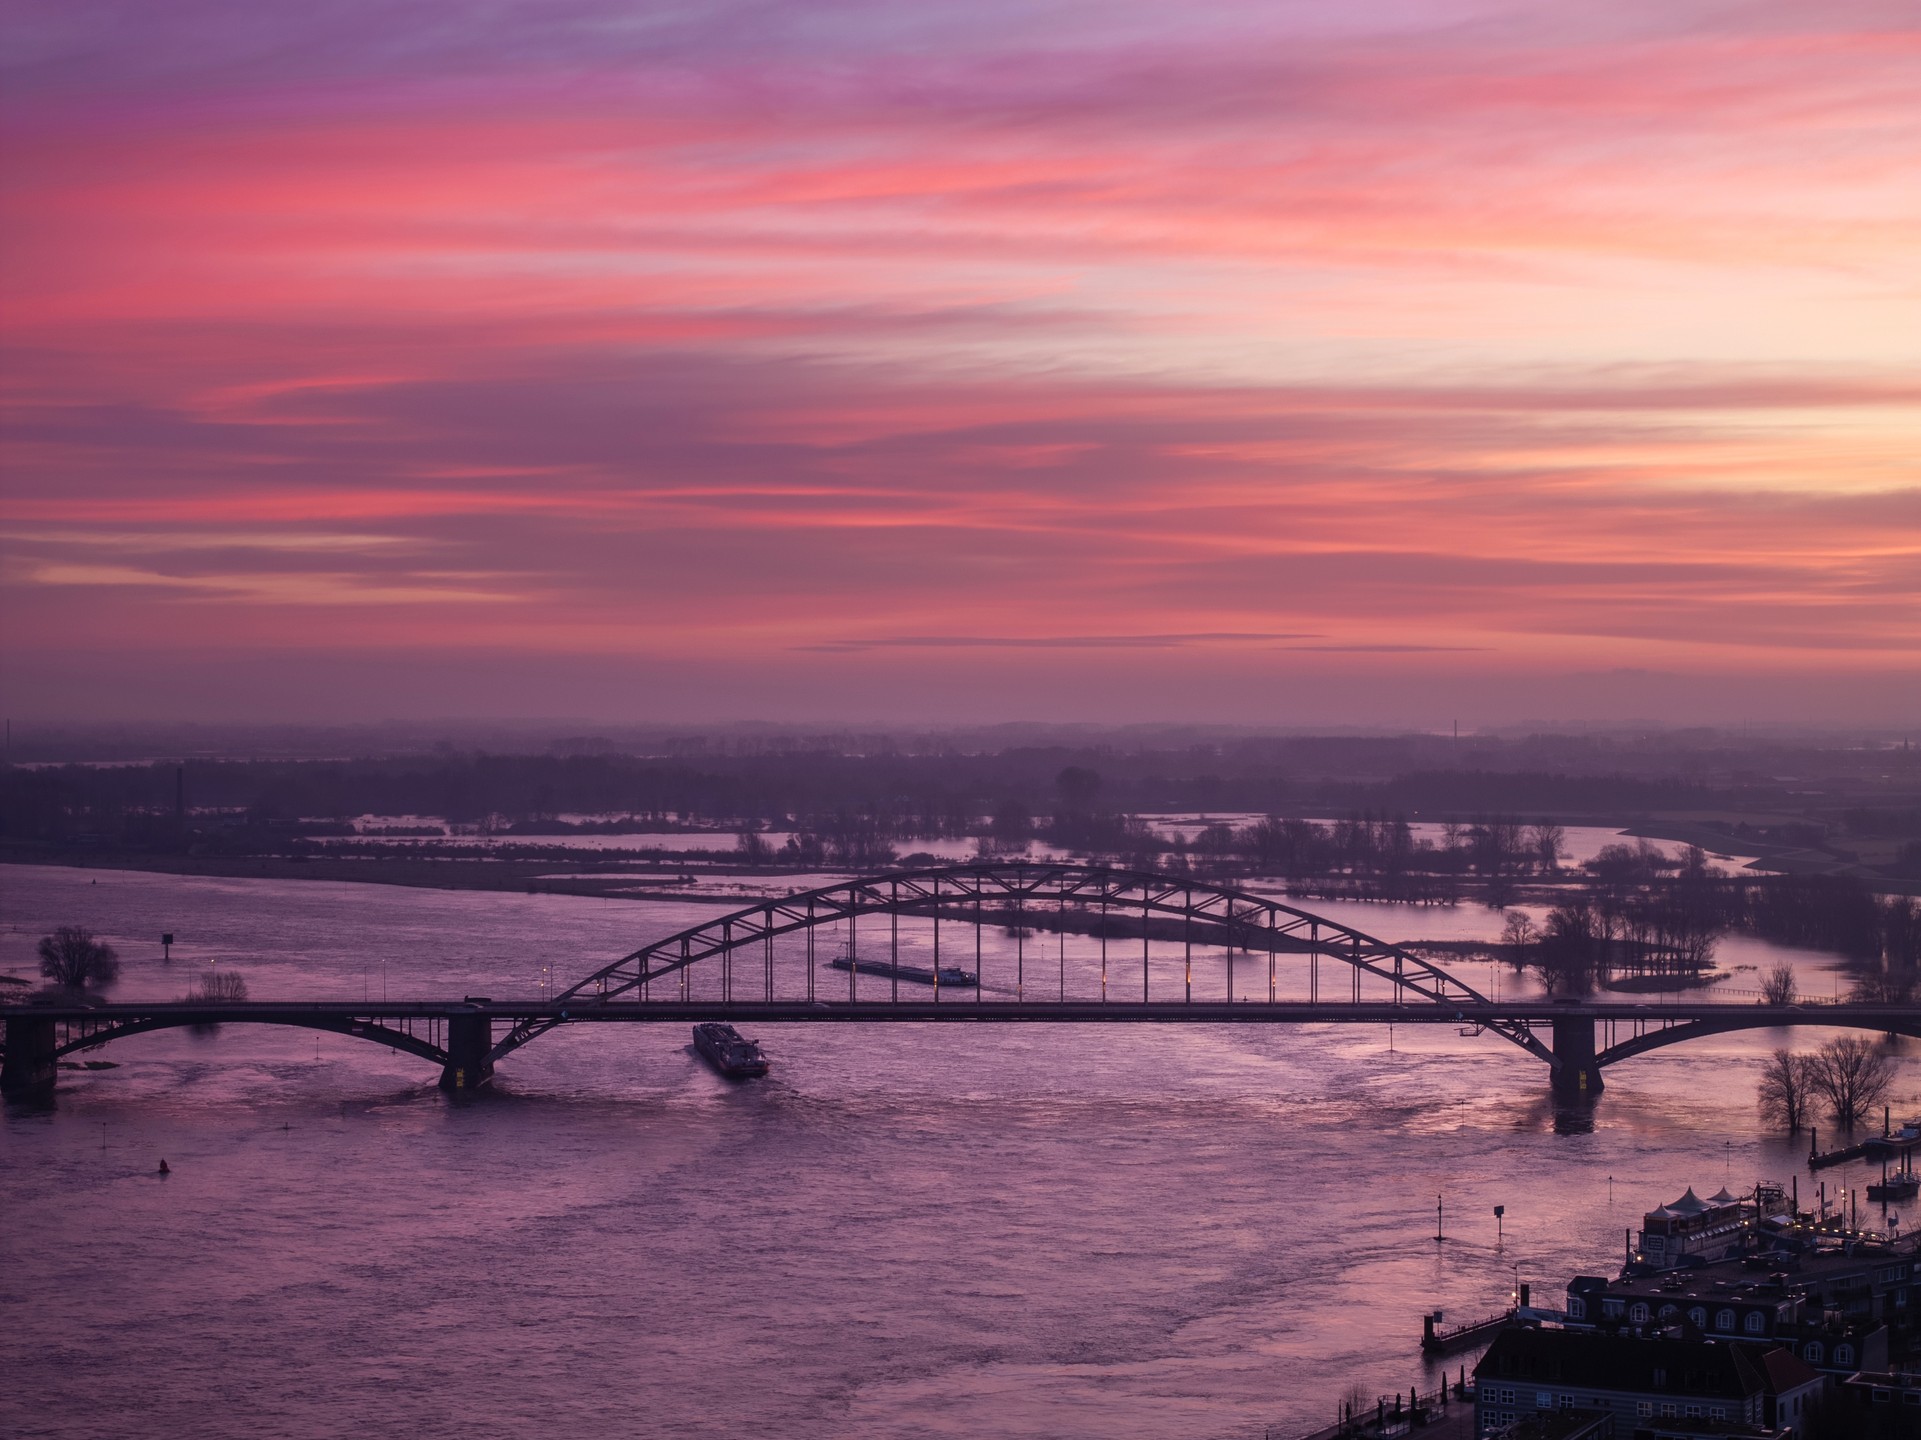 In de ochtend kleurt de lucht rood, een teken dat de dag begint.
📌 Locatie: De Waalbrug
📍 Plaats: Nijmegen 
✅ Dronefotog